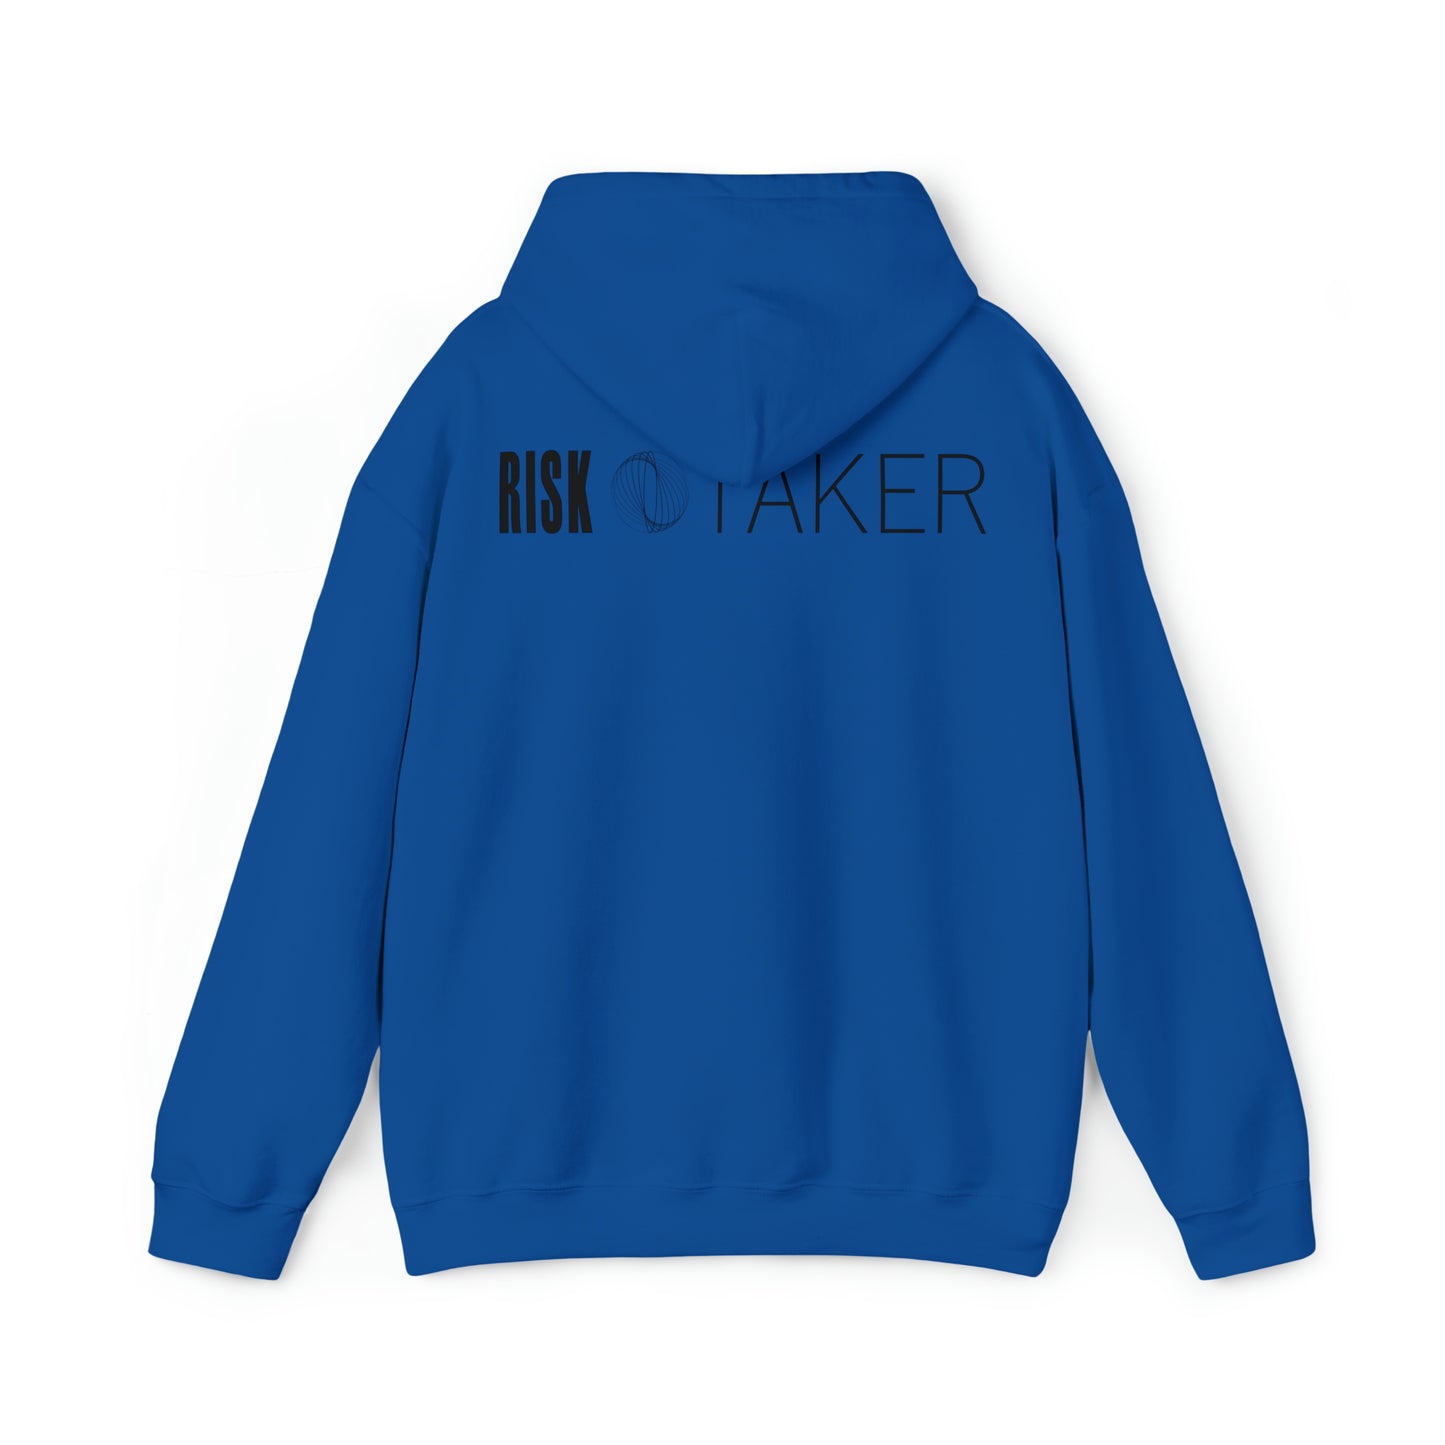 RISK TAKER Hooded Sweatshirt